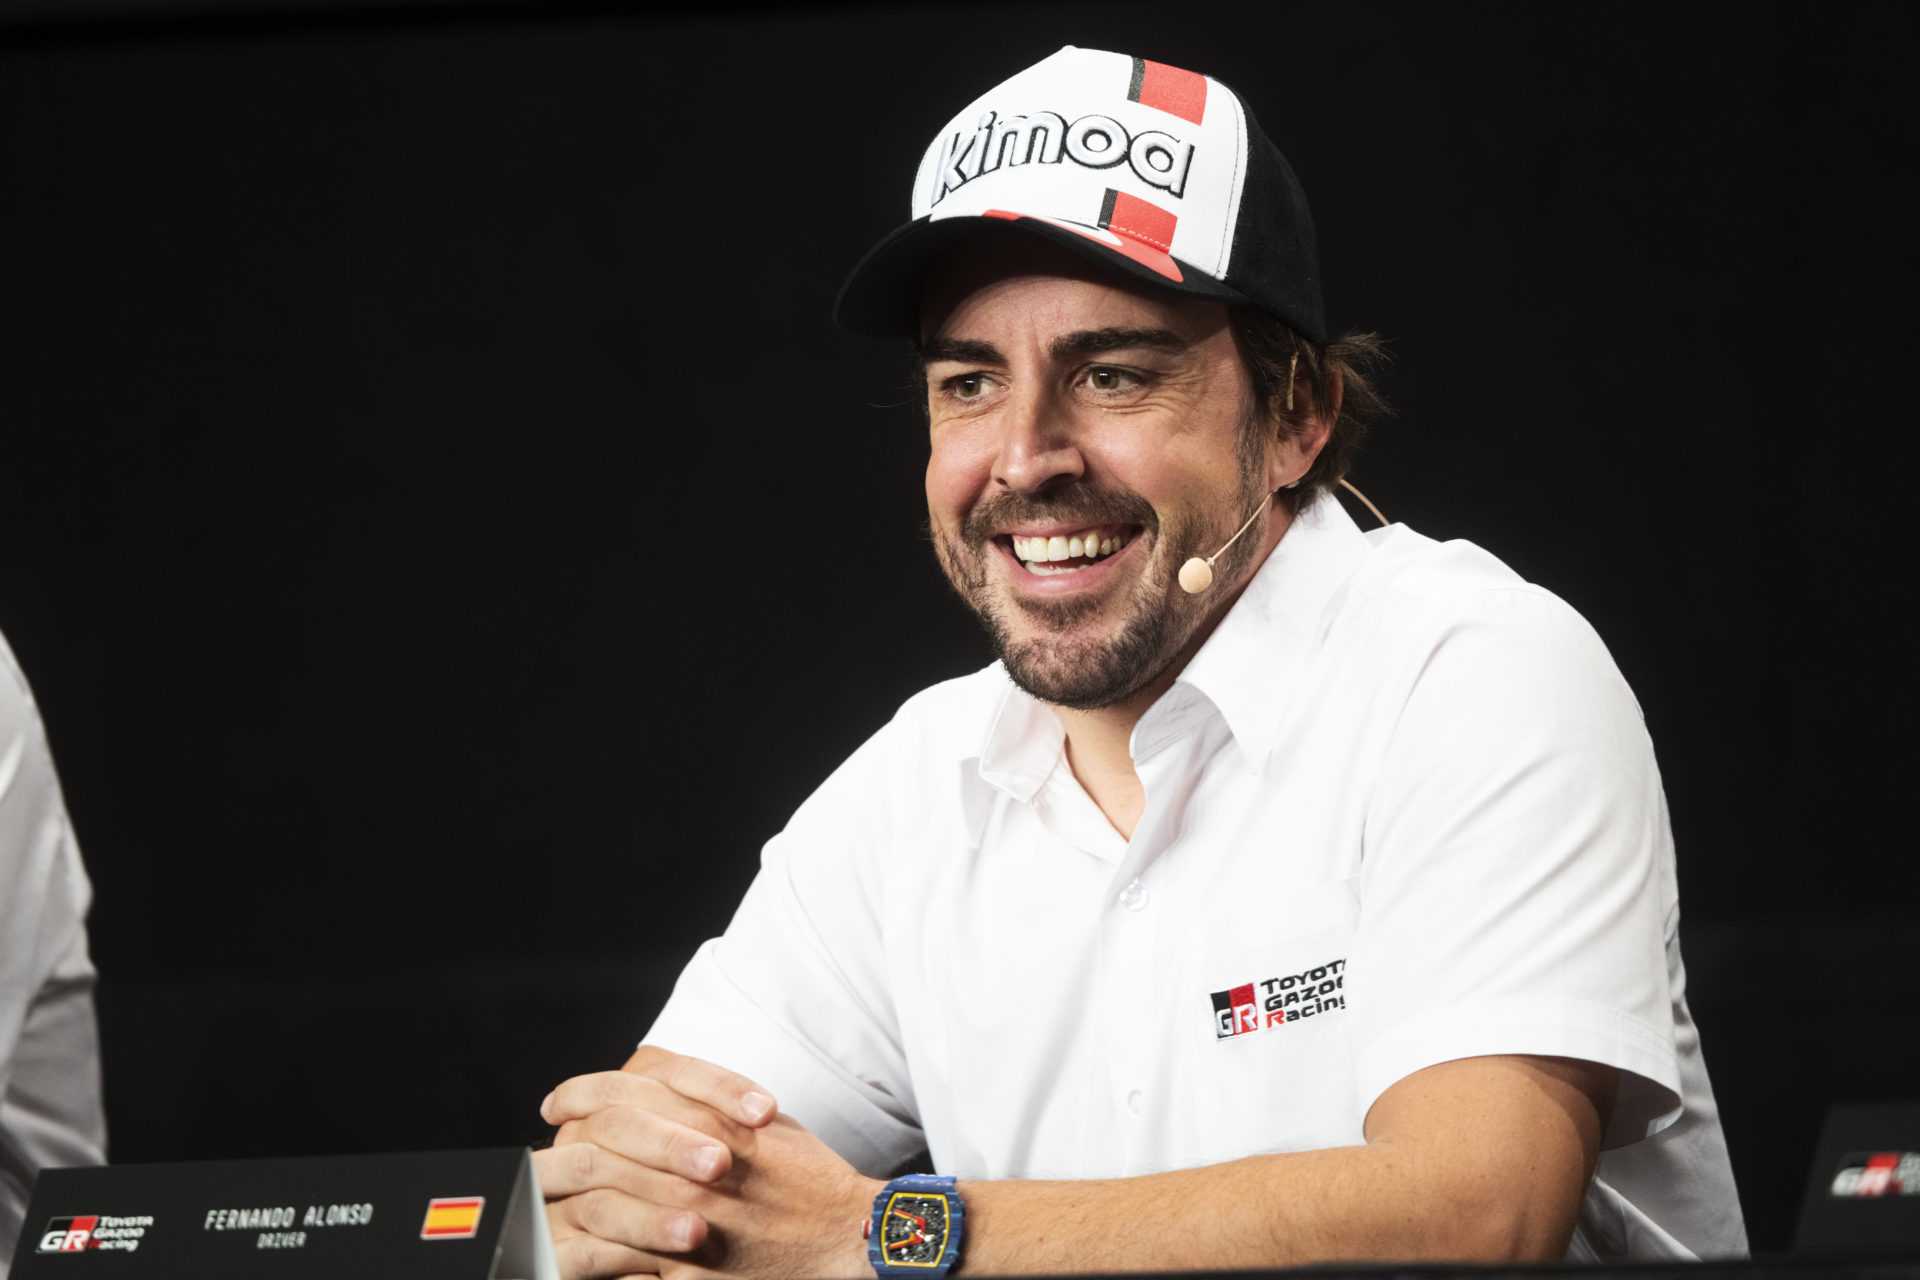 "Ils ne me connaissent pas" - Fernando Alonso dit qu'il "ne comprend pas" ses critiques